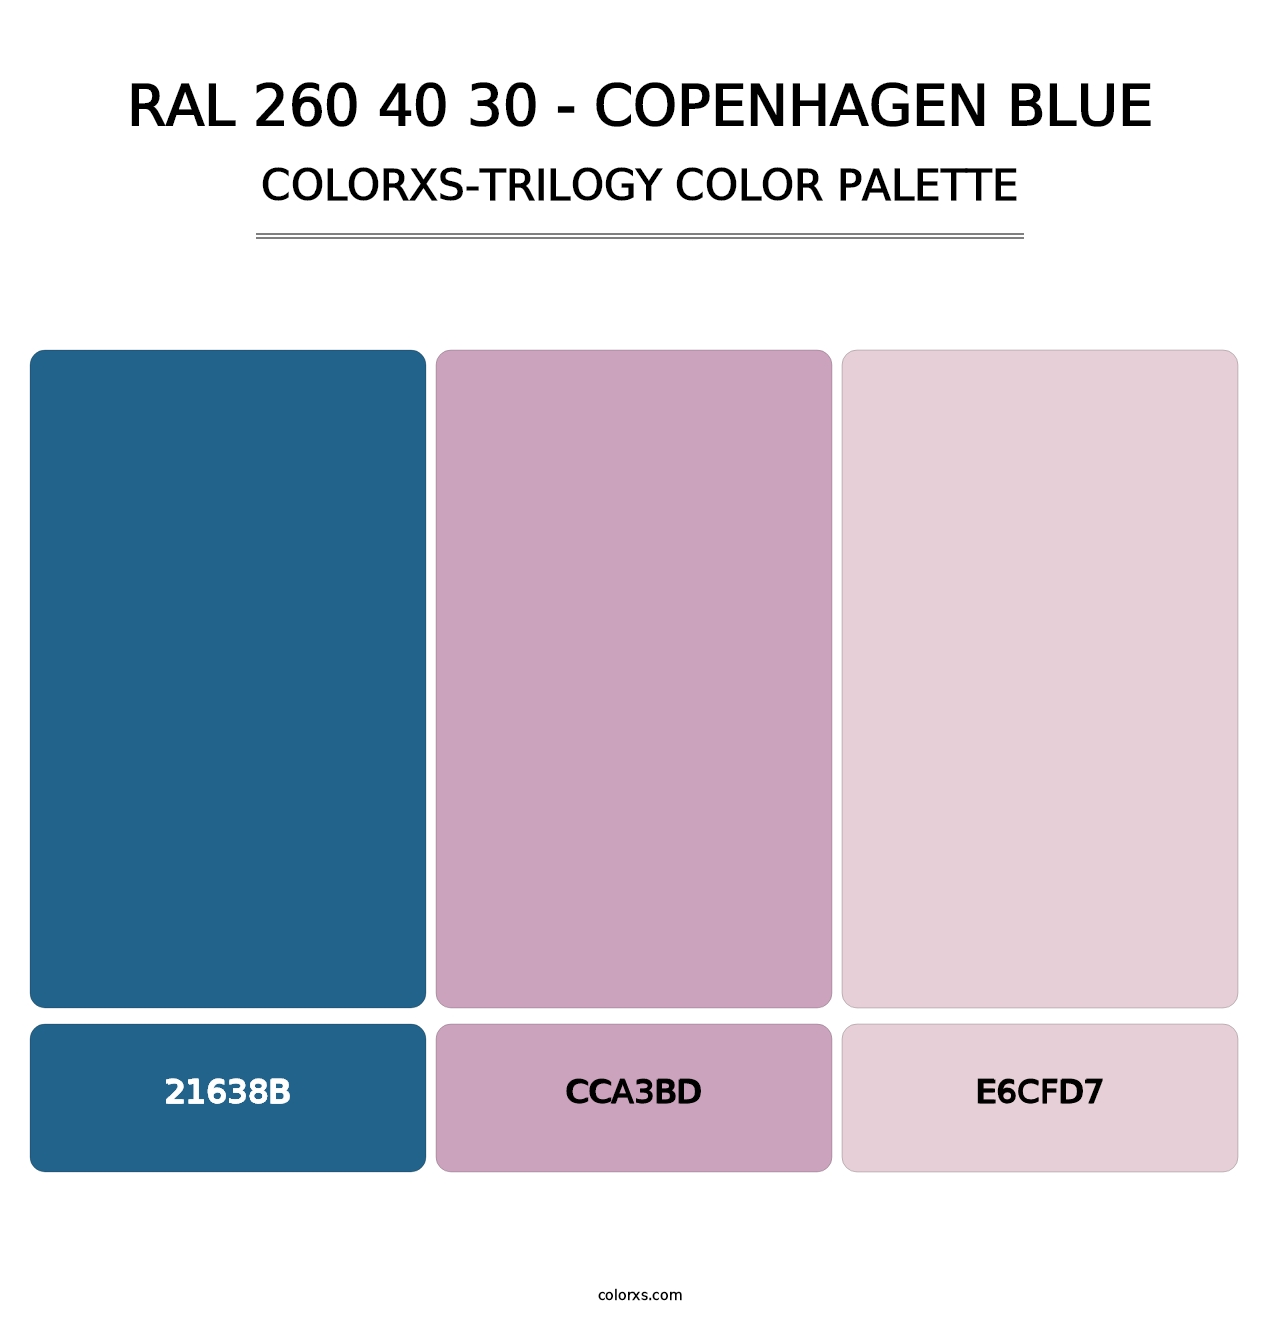 RAL 260 40 30 - Copenhagen Blue - Colorxs Trilogy Palette